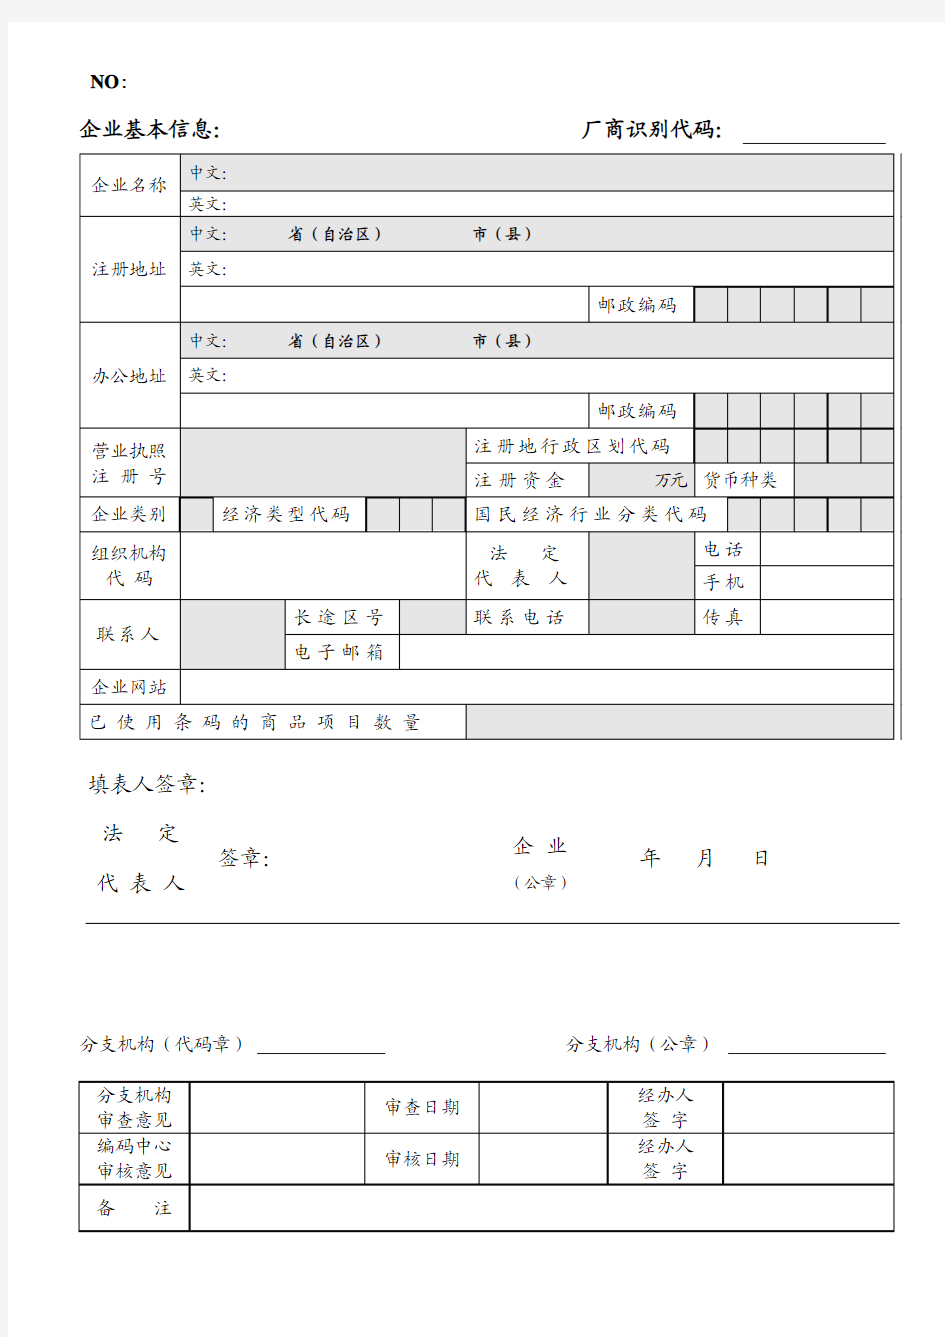 中国商品条码系统成员续展登记表